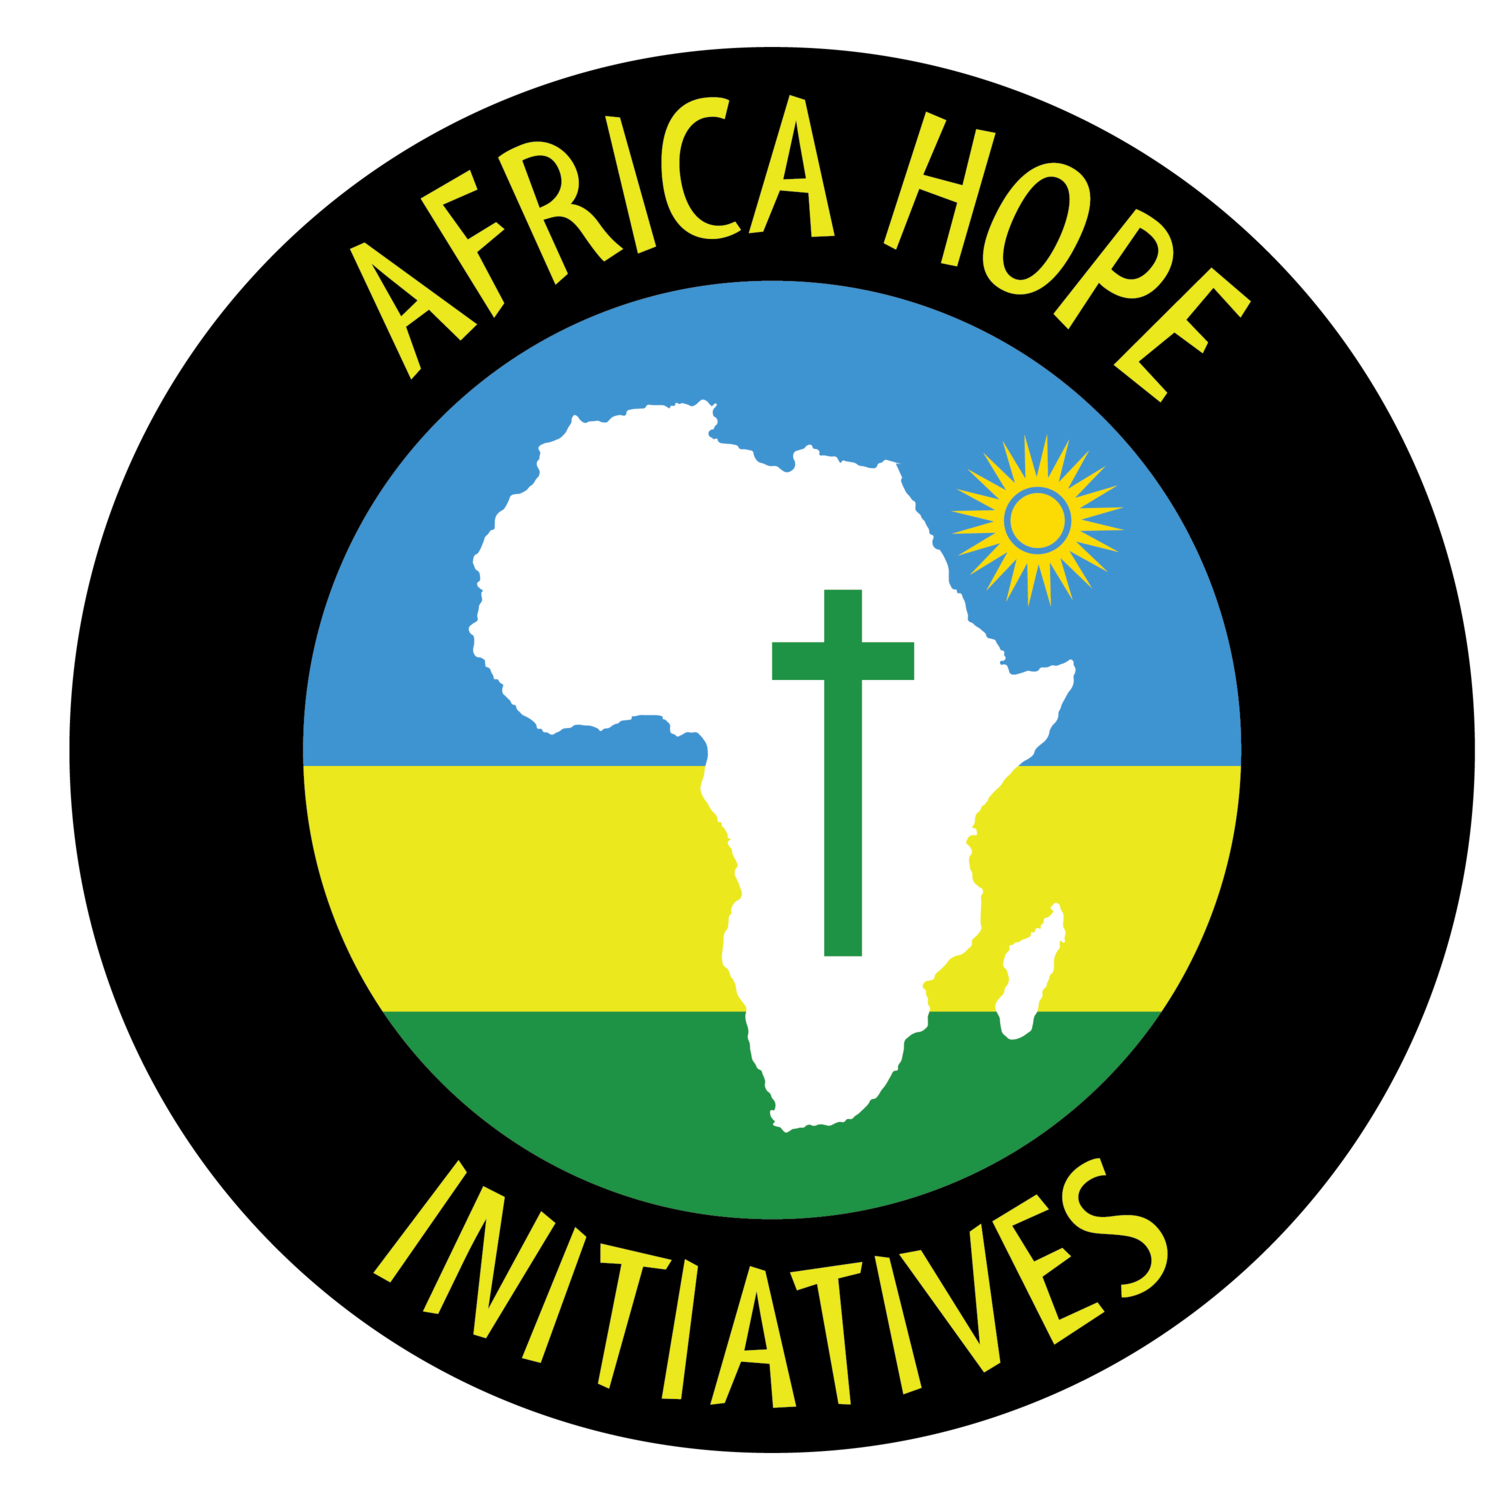 Africa Hope Initiatives